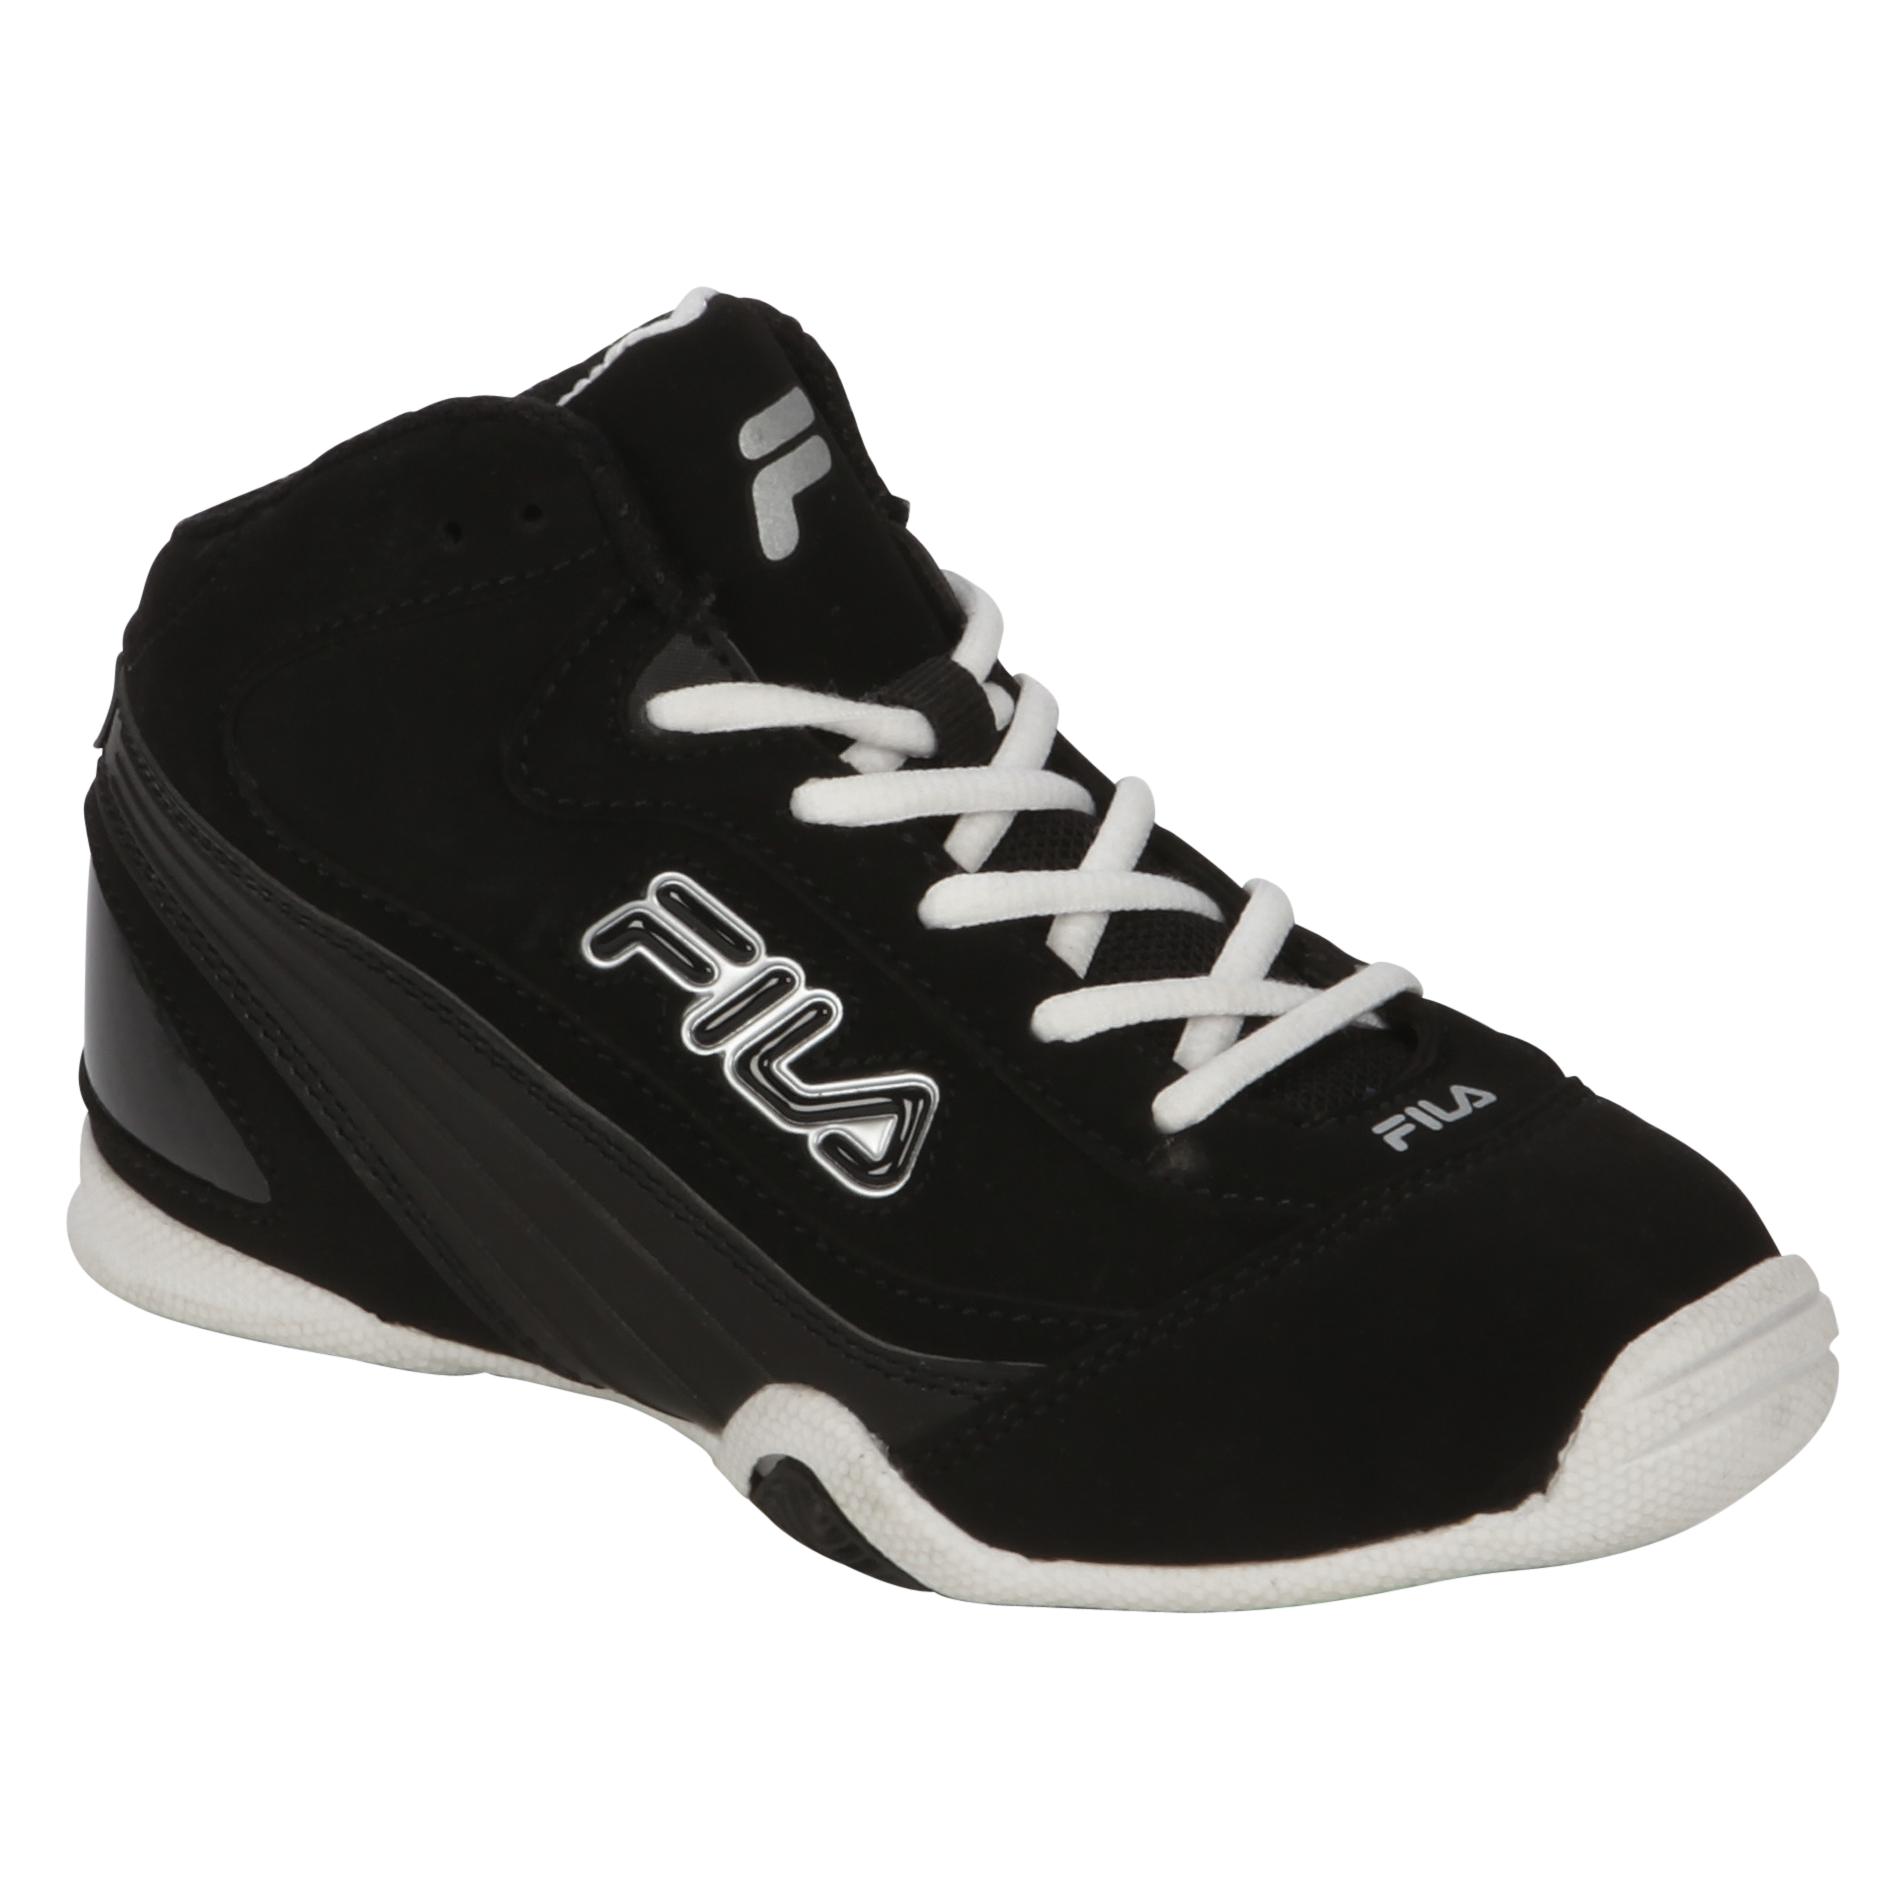 Fila Boy's Sneaker Slingshot 2 - Black/White